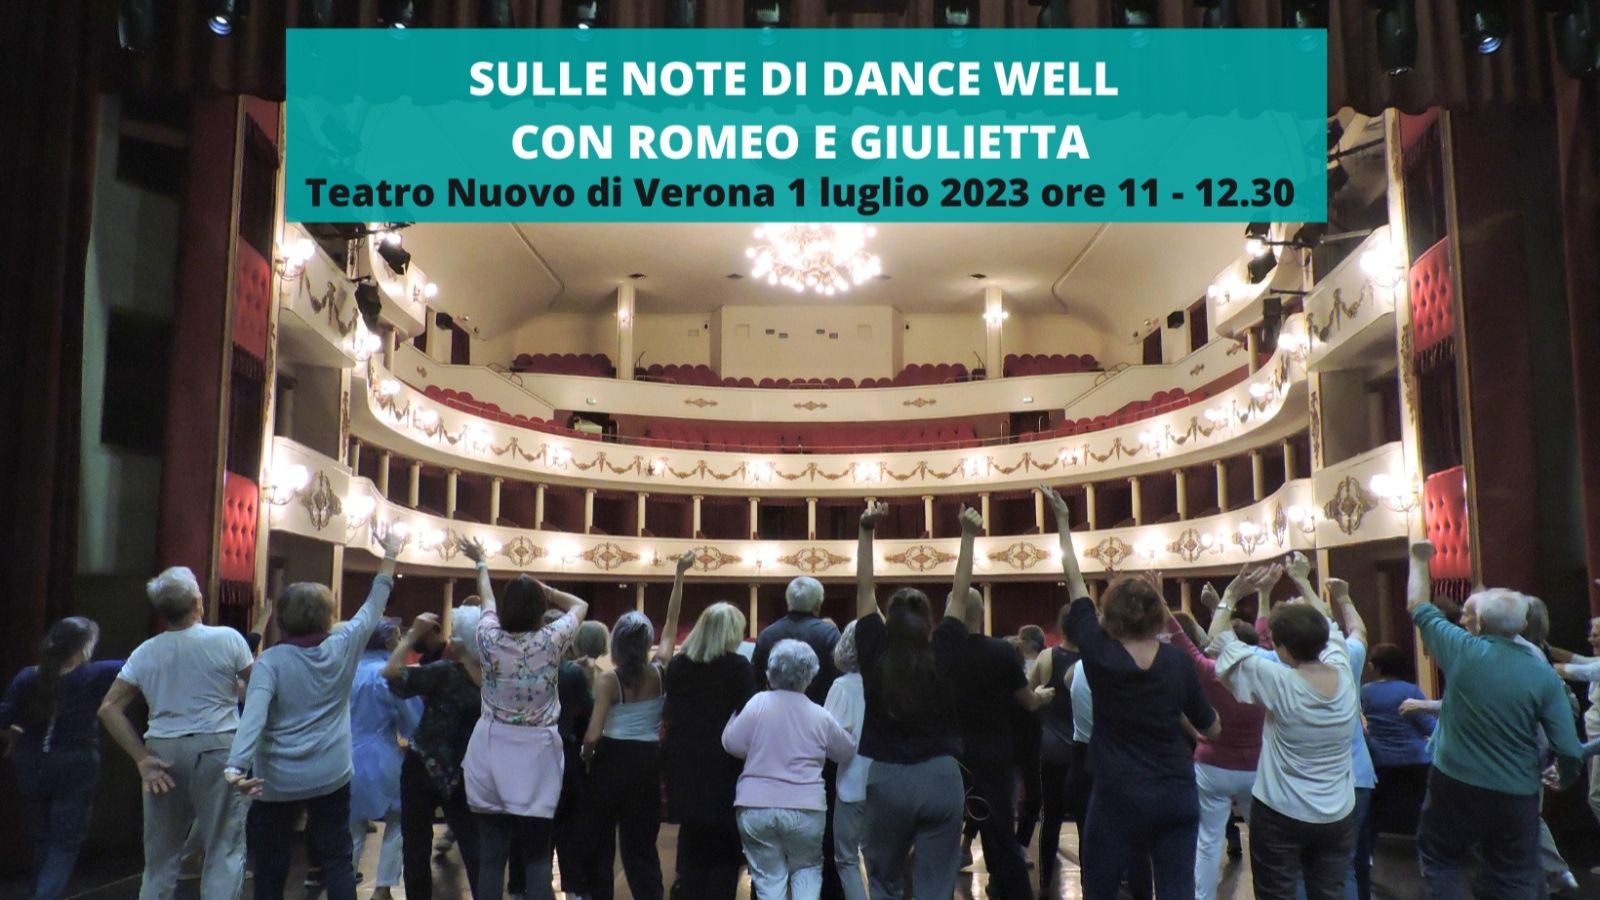 romeo-giulietta-dance-well